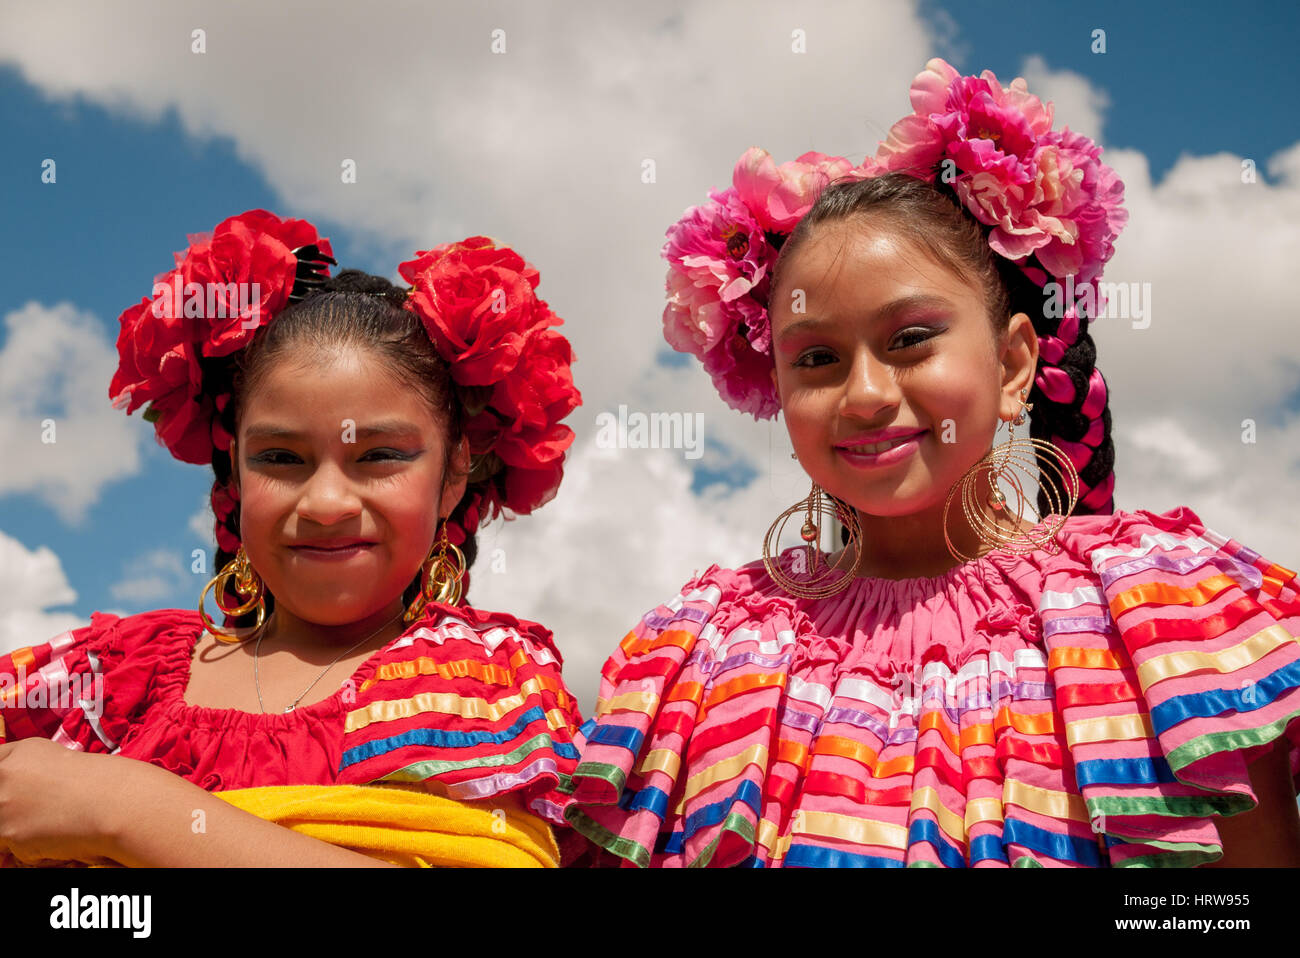 Los niños en la pequeña aldea del desfile del Día de la Independencia de México, el 9 de septiembre de 2012, en el sur de Chicago. Foto de stock